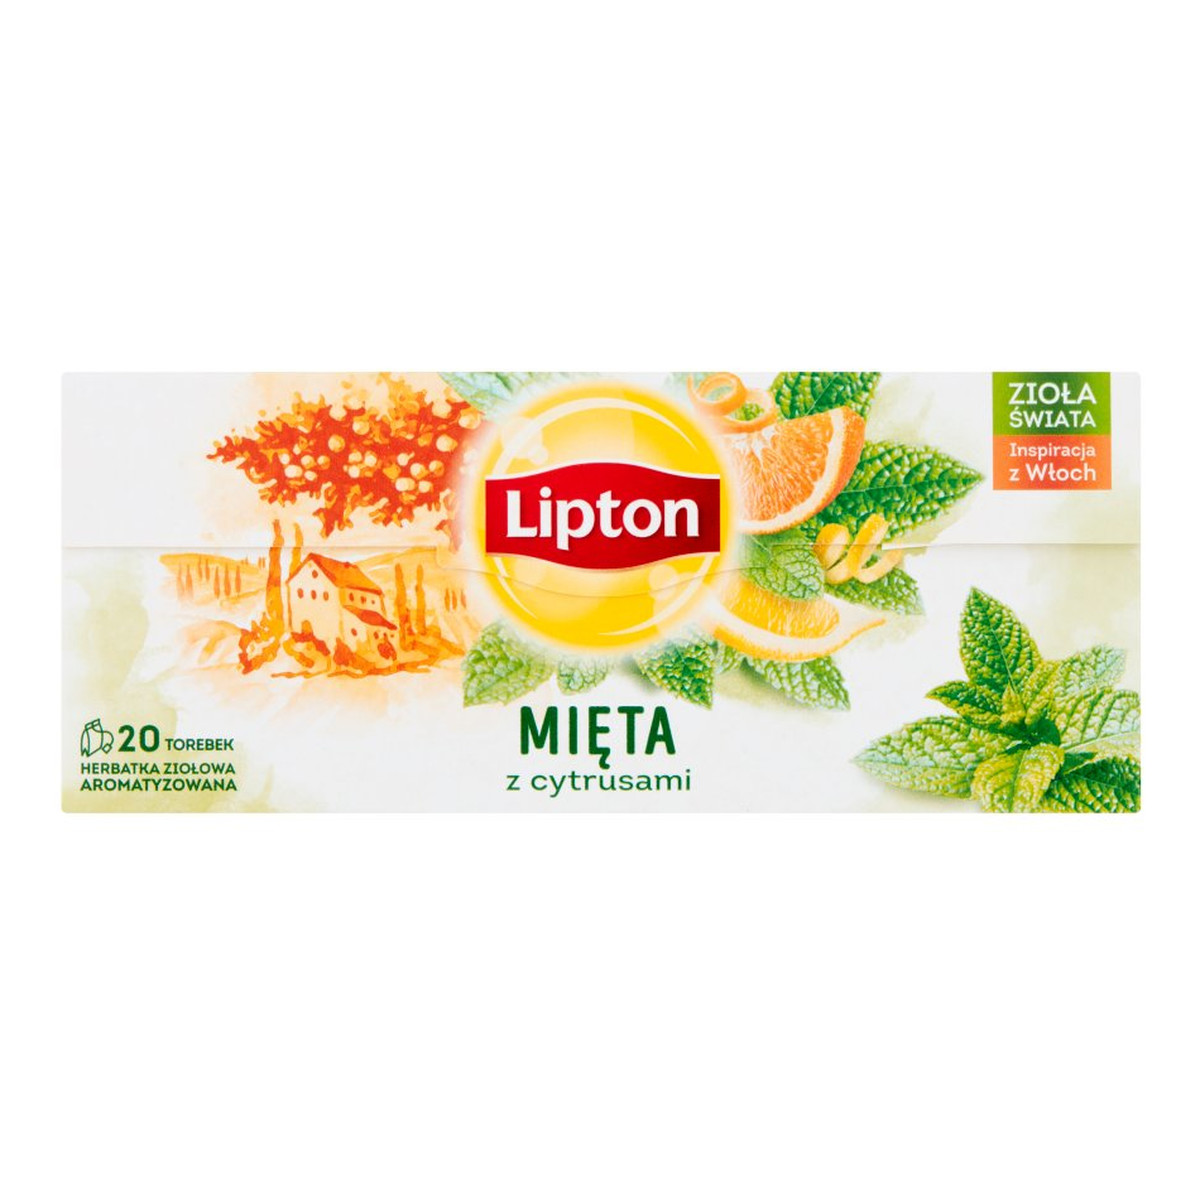 Lipton Herbatka ziołowa aromatyzowana mięta z cytrusami 20 torebek 26g